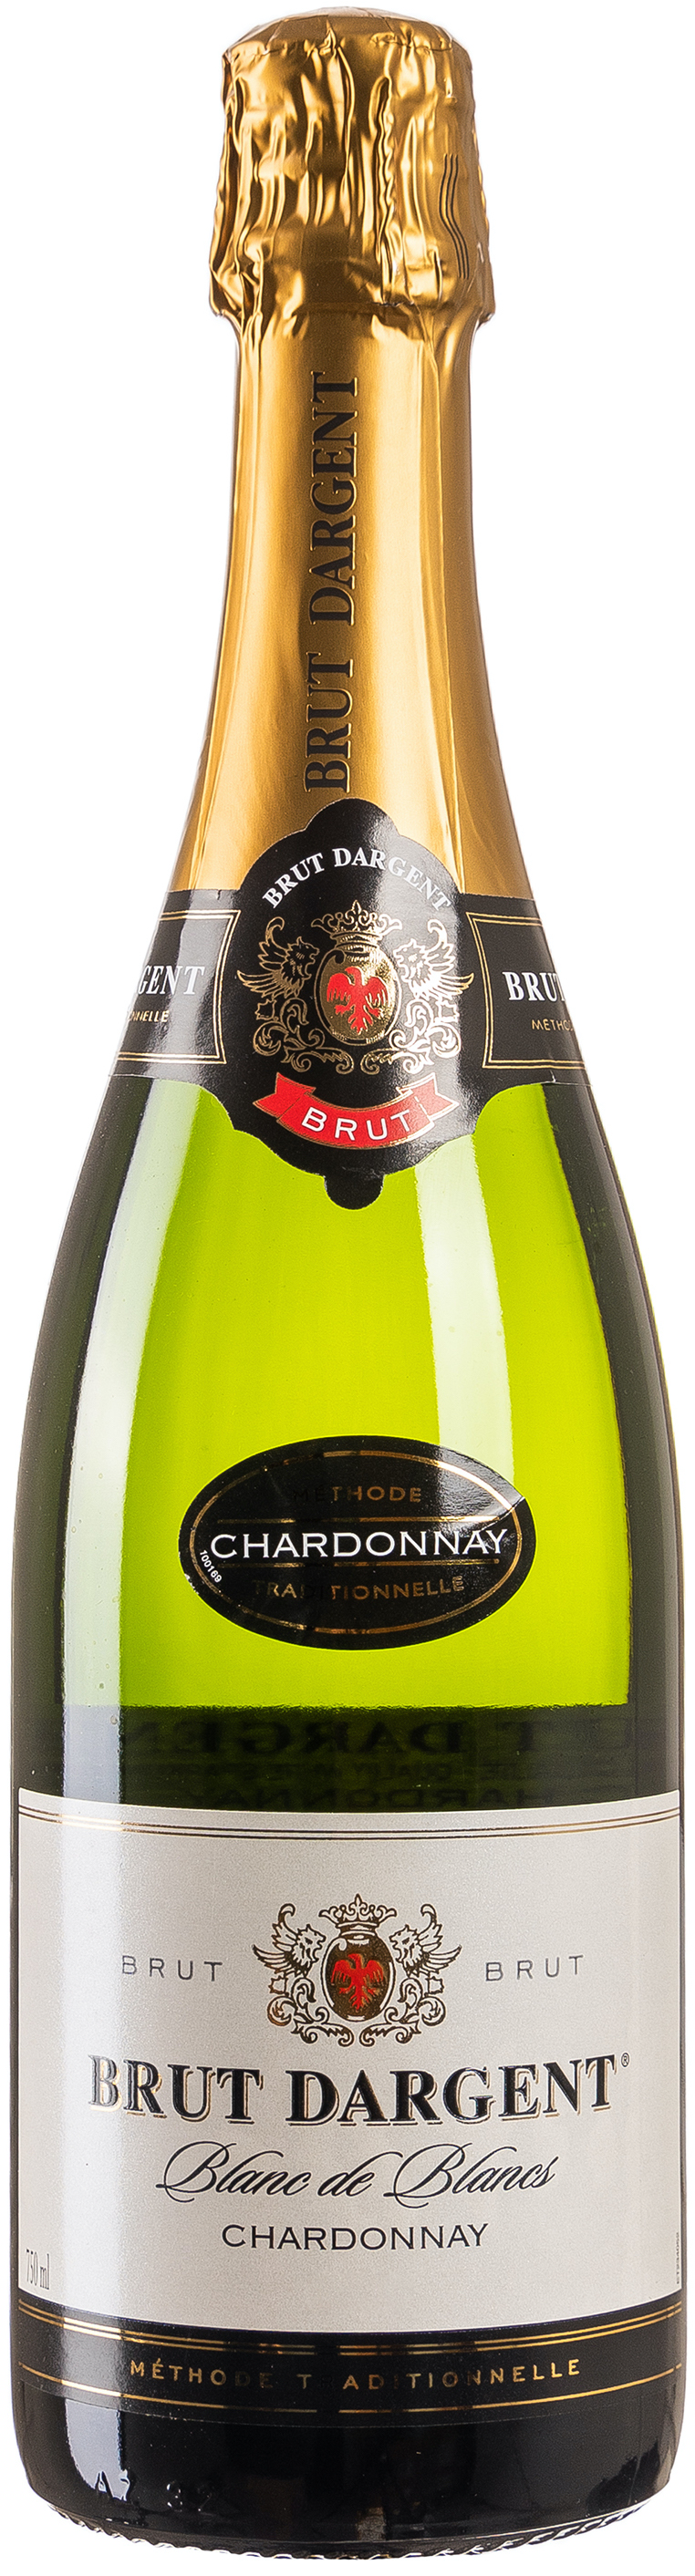 Brut Dargent Chardonnay Blanc Sekt 11,5%vol. 0,75L